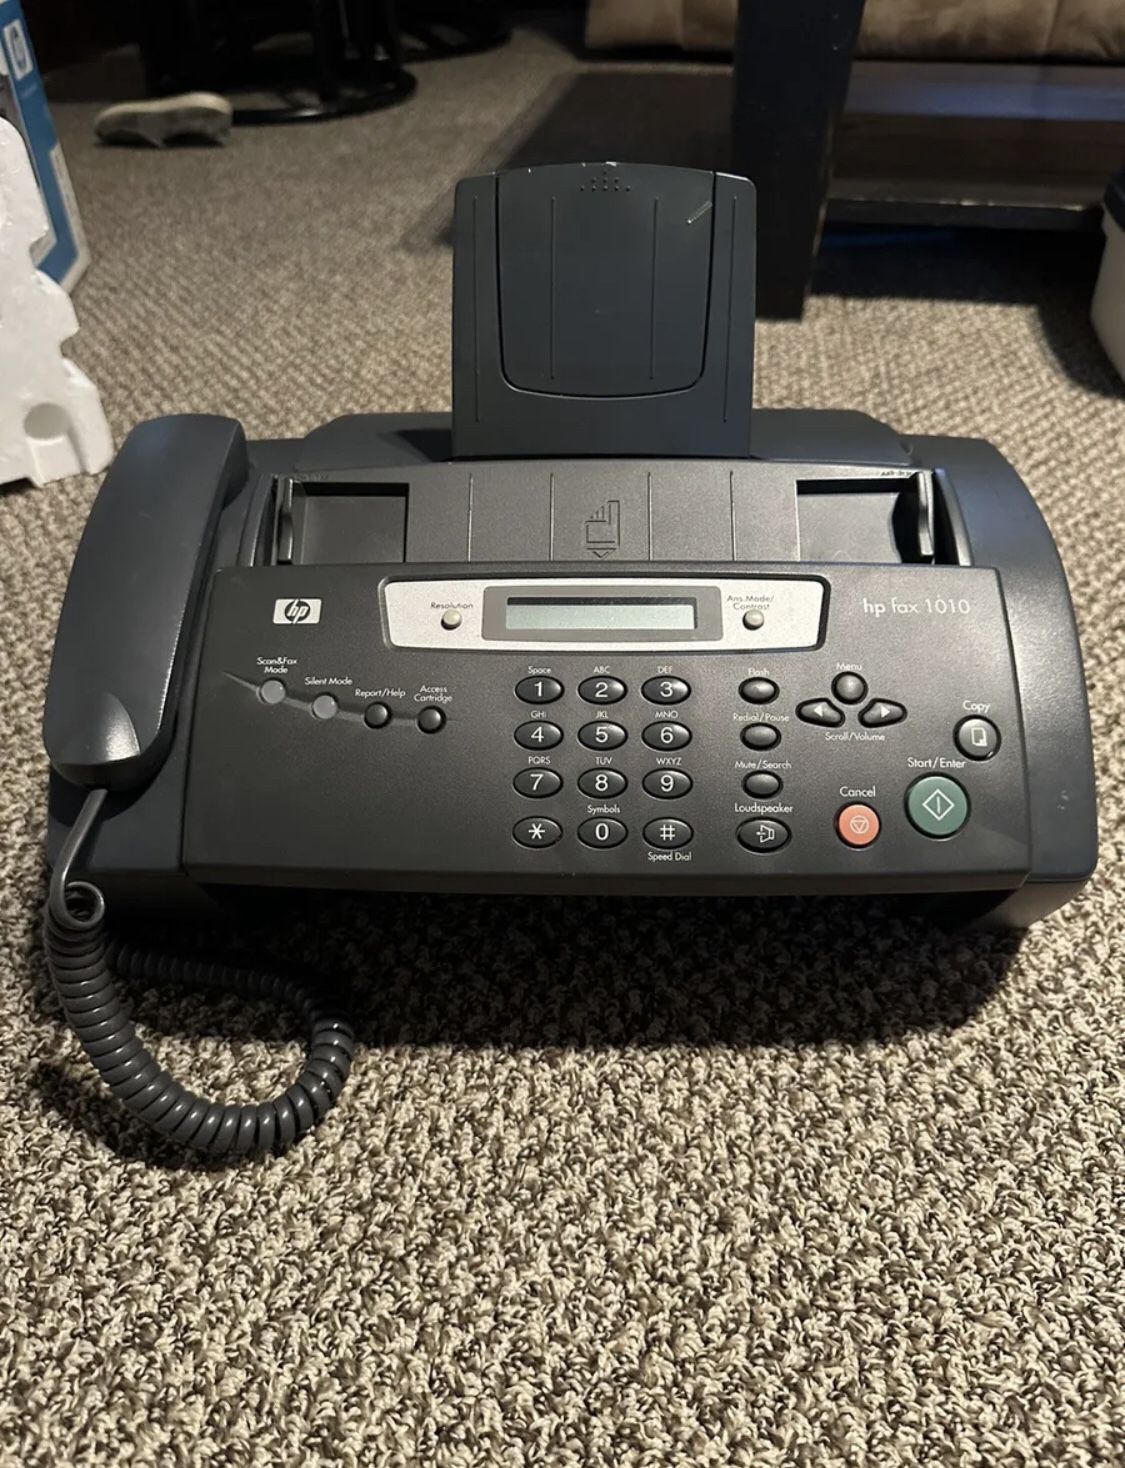 HP Fax 1010 Phone Fax Machine Copier